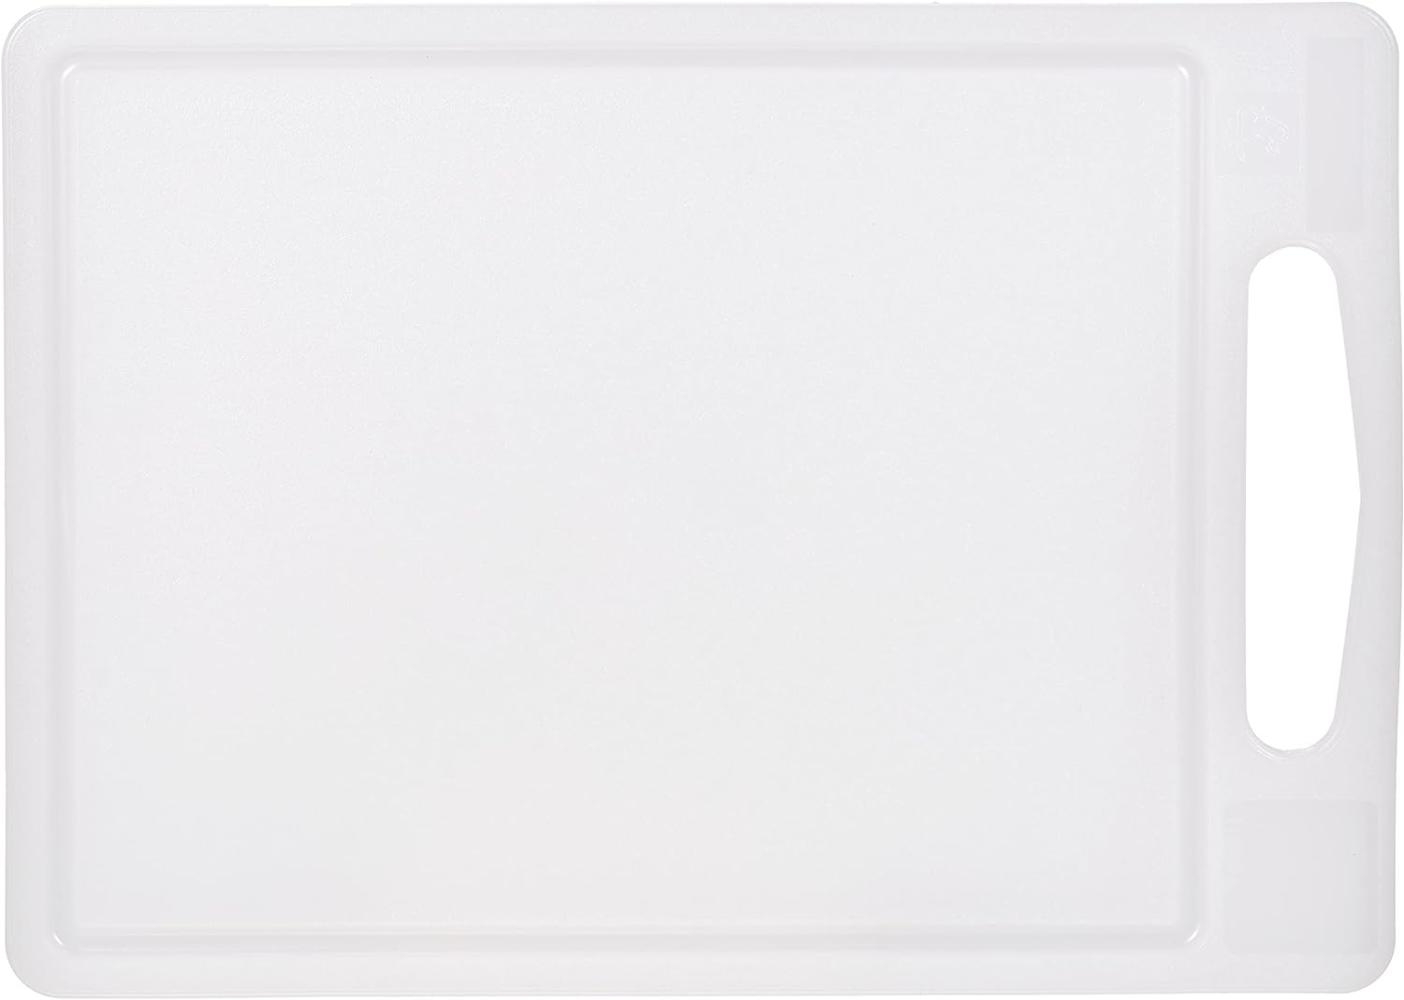 my basics 342 mb Schneidbrett aus Kunststoff, mit Saftrille, 35 x 25 cm, weiß Bild 1